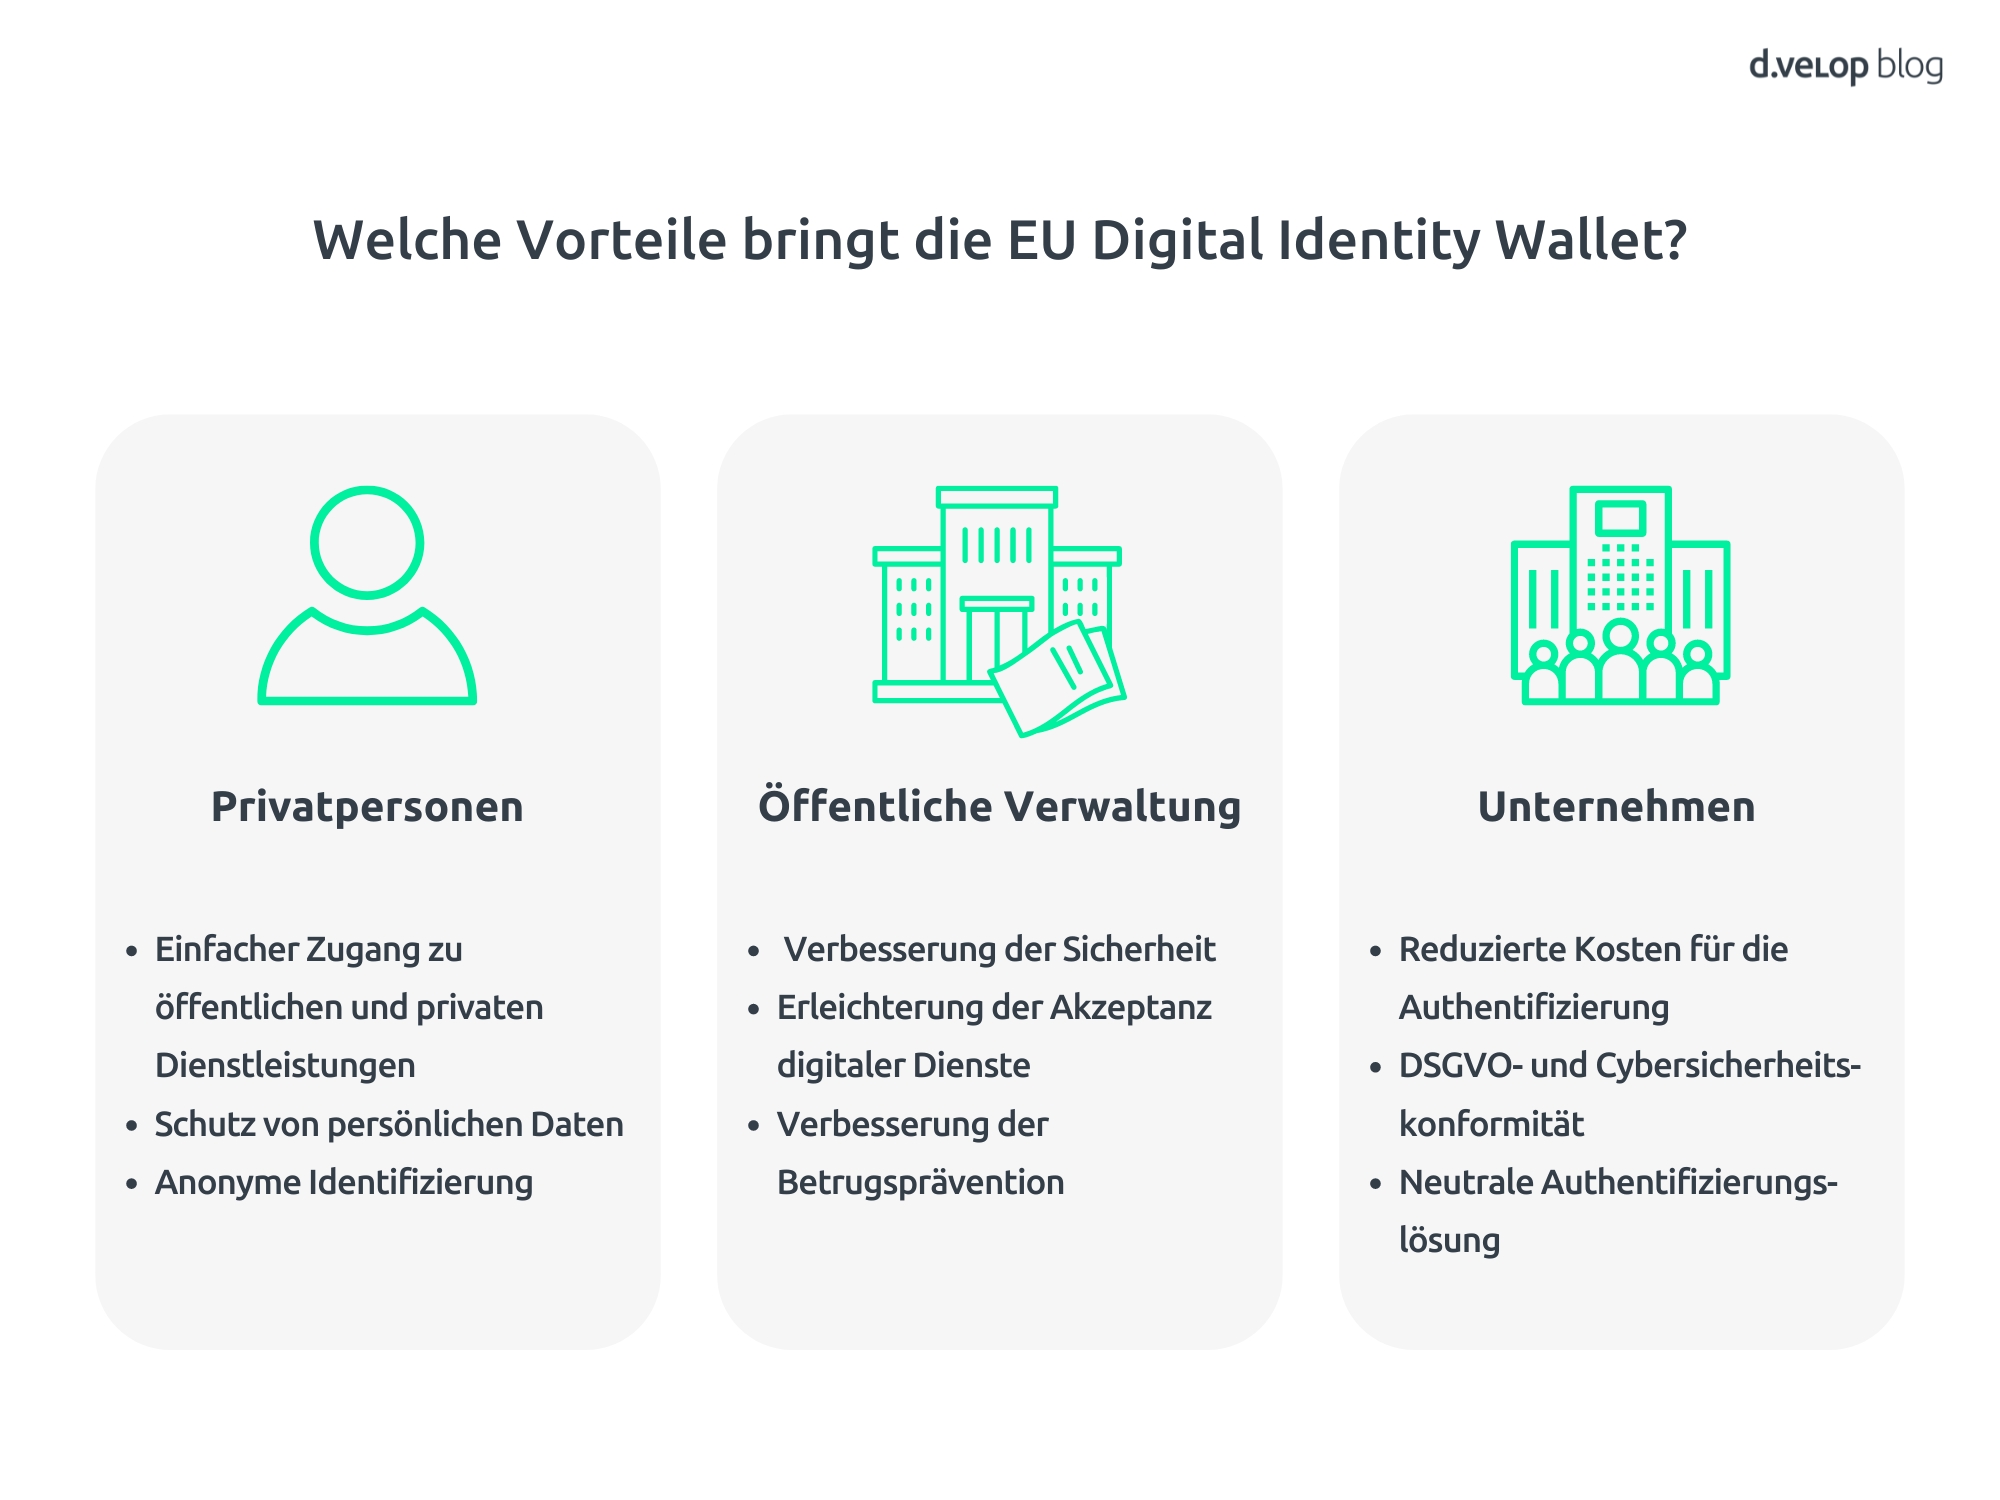 Infografik zeigt die Vorteile des EU Digital Identity Wallet für Privatpersonen, öffentliche Verwaltung und Unternehmen